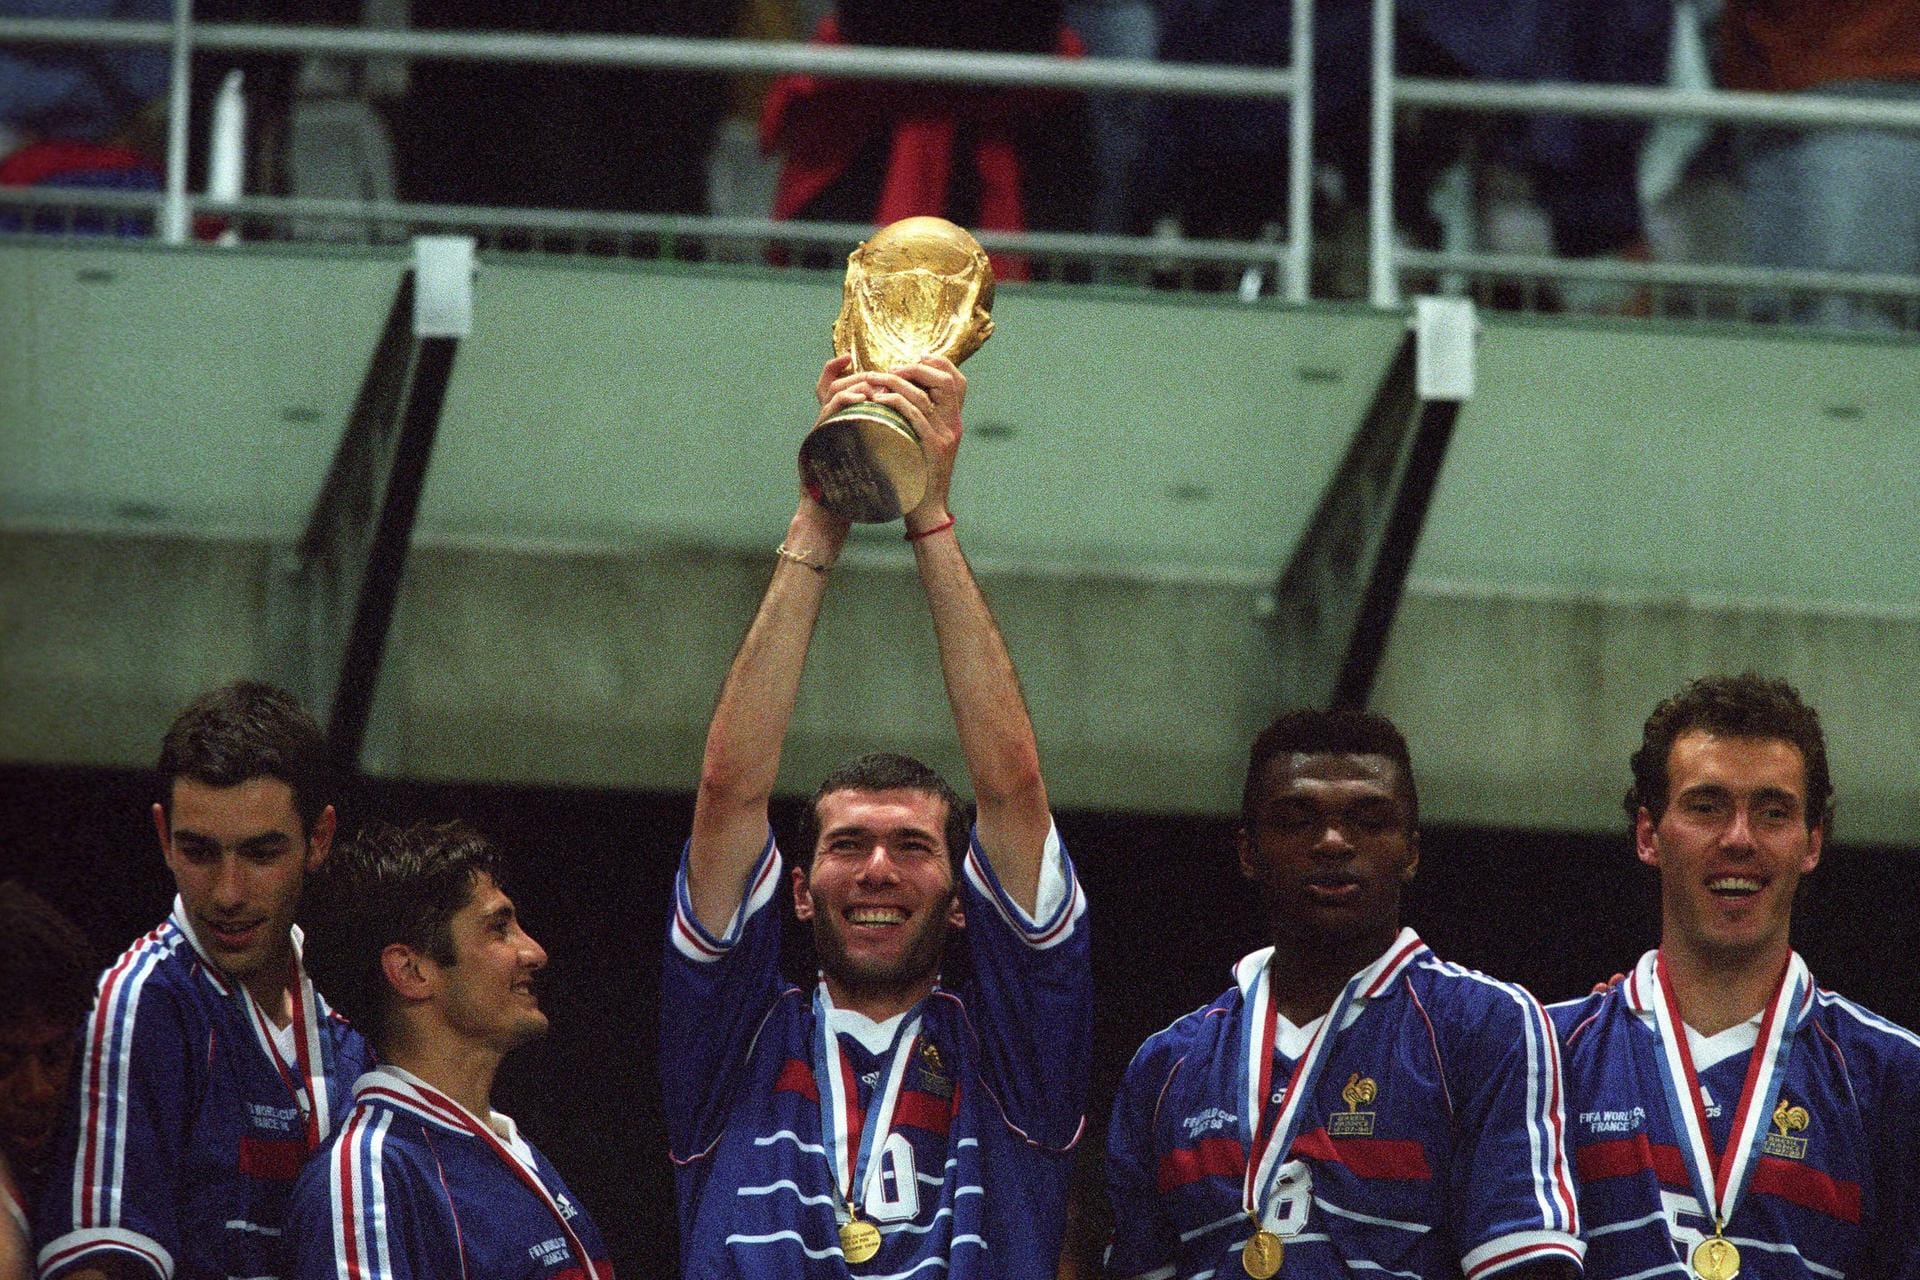 WM in Frankreich: 1998 folgt der große Triumph. Bei der WM im eigenen Land gewinnt Zidane 1998 mit der französischen Nationalmannschaft. Im Finale gegen Brasilien bringt er Frankreich mit zwei Kopfballtoren in Führung. Endstand 3:0.